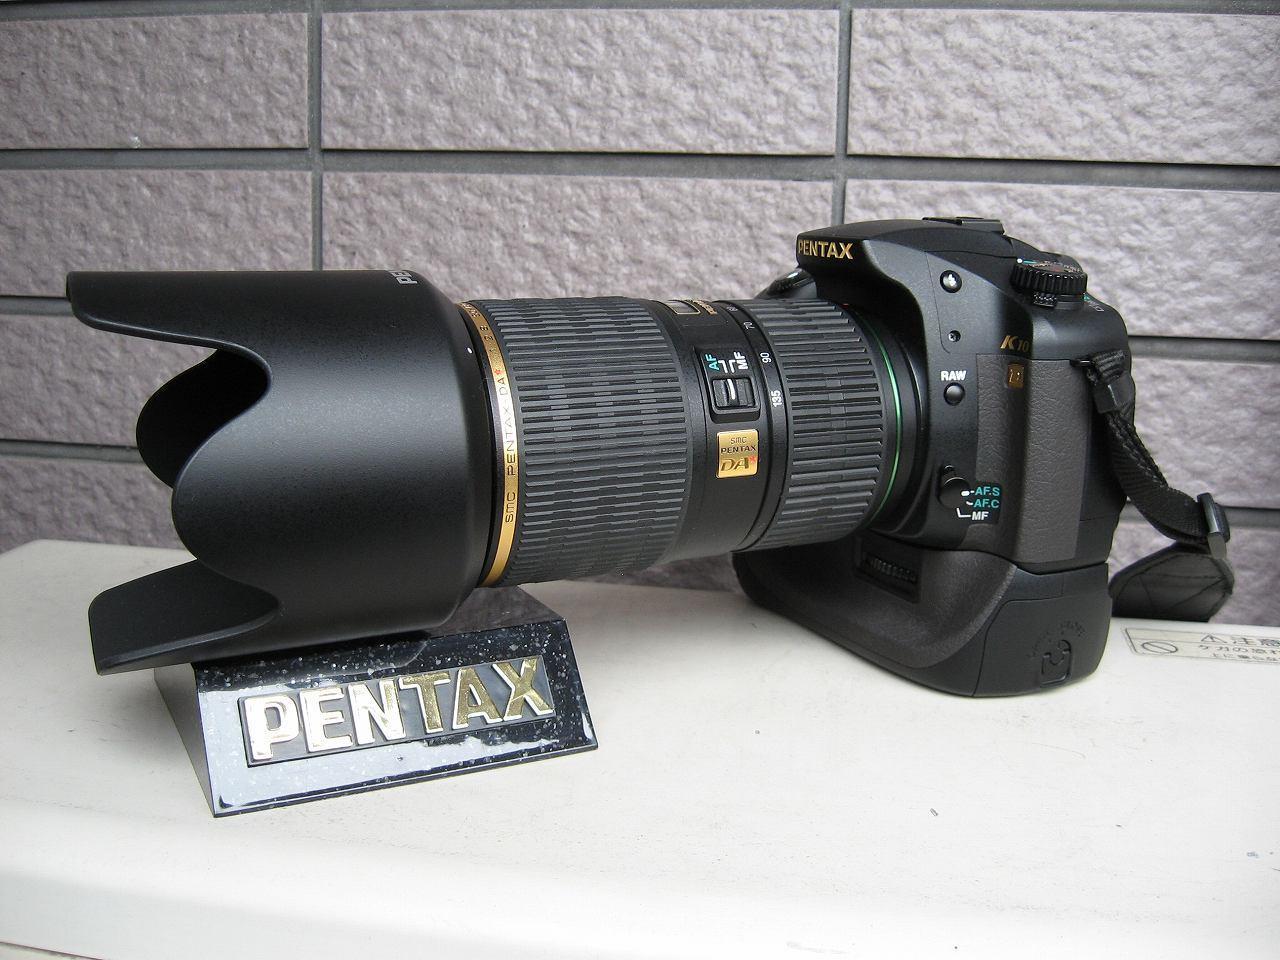 smc PENTAX-DA☆ 50-135mm F2.8ED SDM